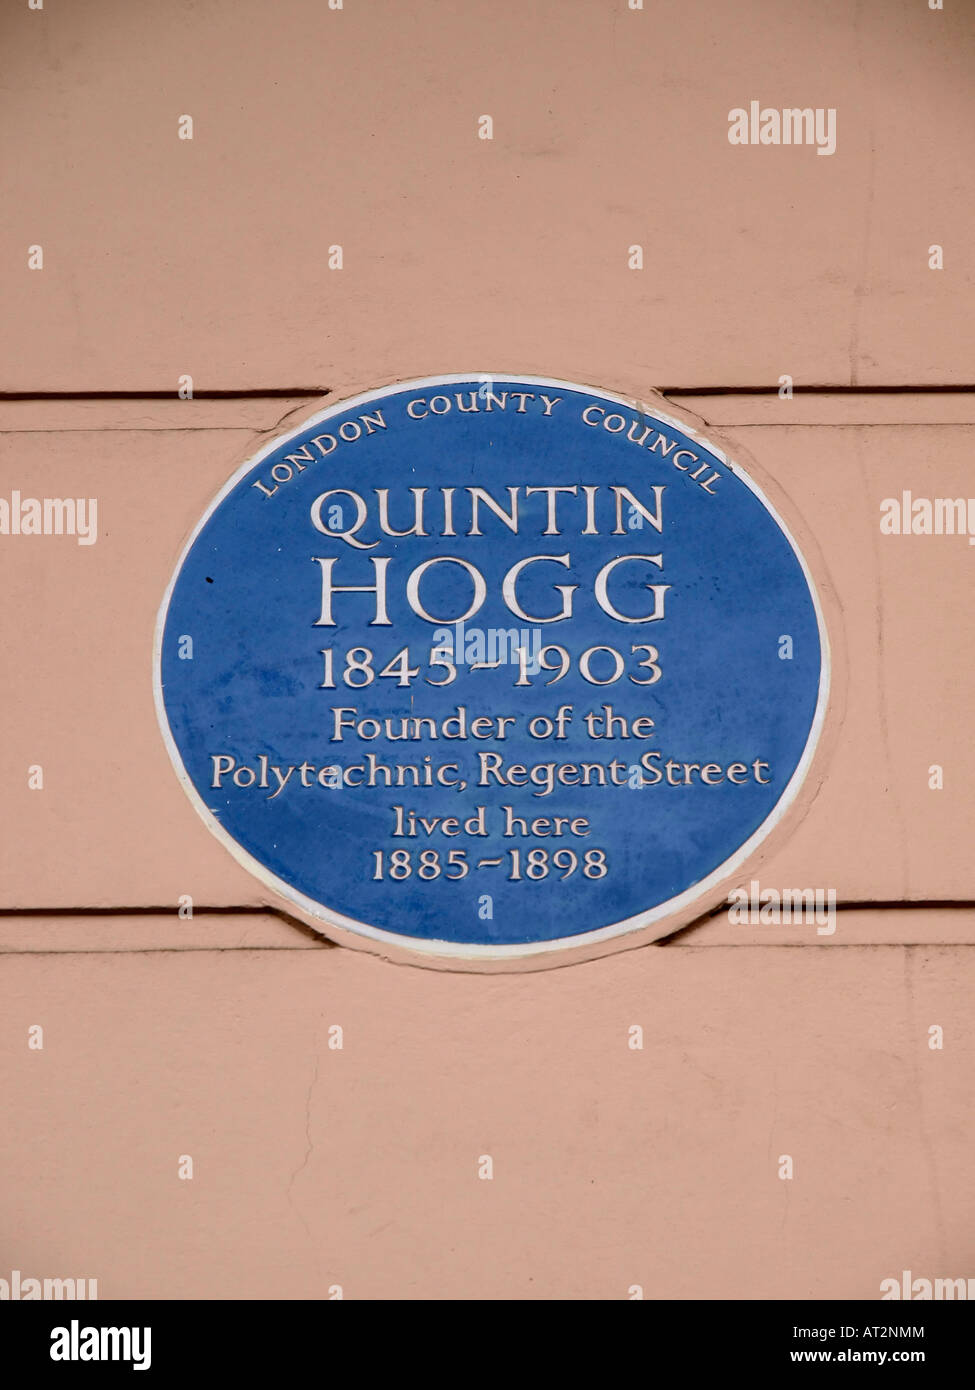 Blaue Plakette am 5 Cavendish Square London an Quintin Hogg (1845-1903), den Gründer der Polytechnic, war ein viktorianischer Philanthropin und Pädagoge. Stockfoto